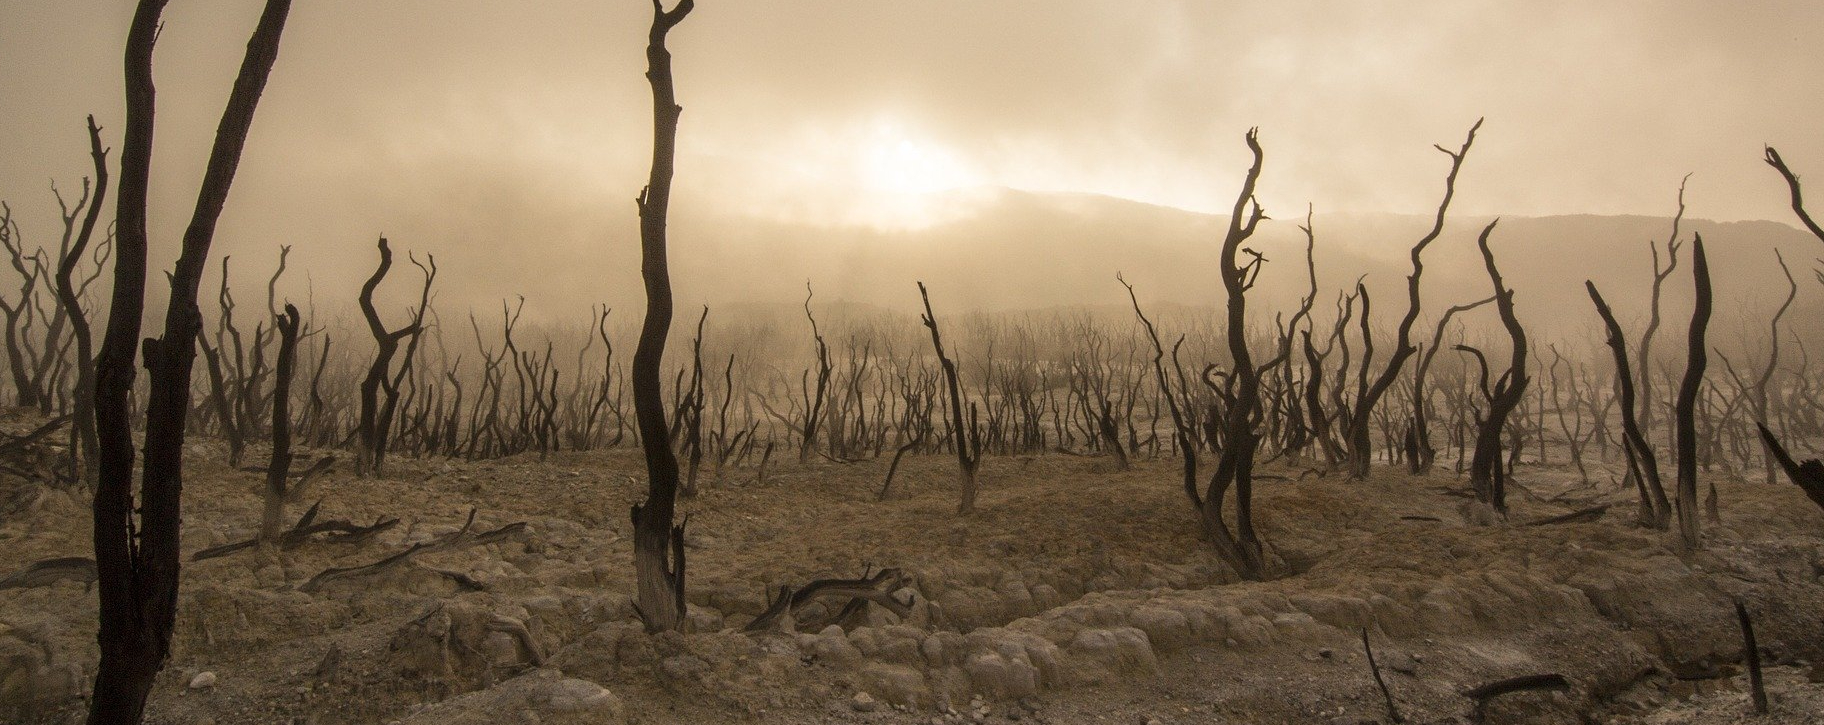 En 2021, des millions d'hectares de forêt ont brûlé à cause de sécheresses extrêmes dans diverses régions du Globe | photo d'illustration © Pixabay